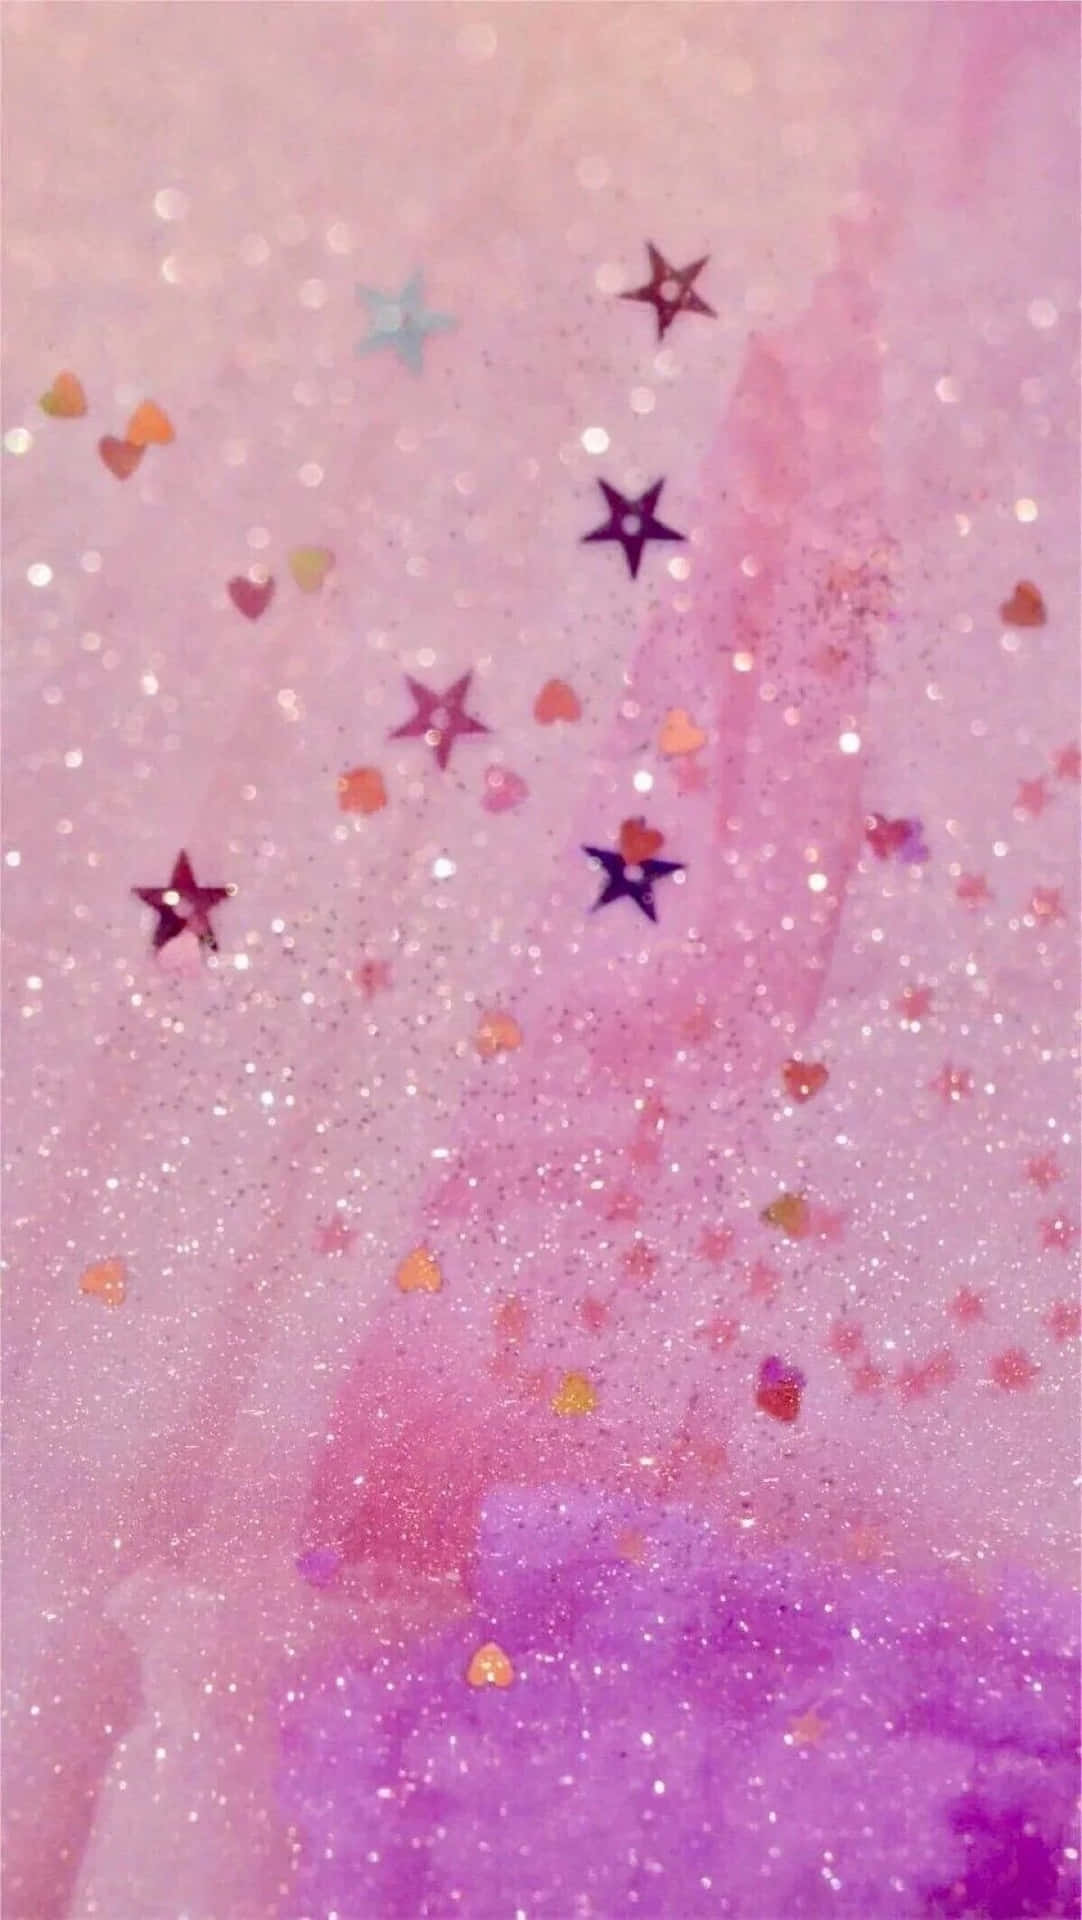 Sparkling Stardust Glitter Aesthetic.jpg Wallpaper